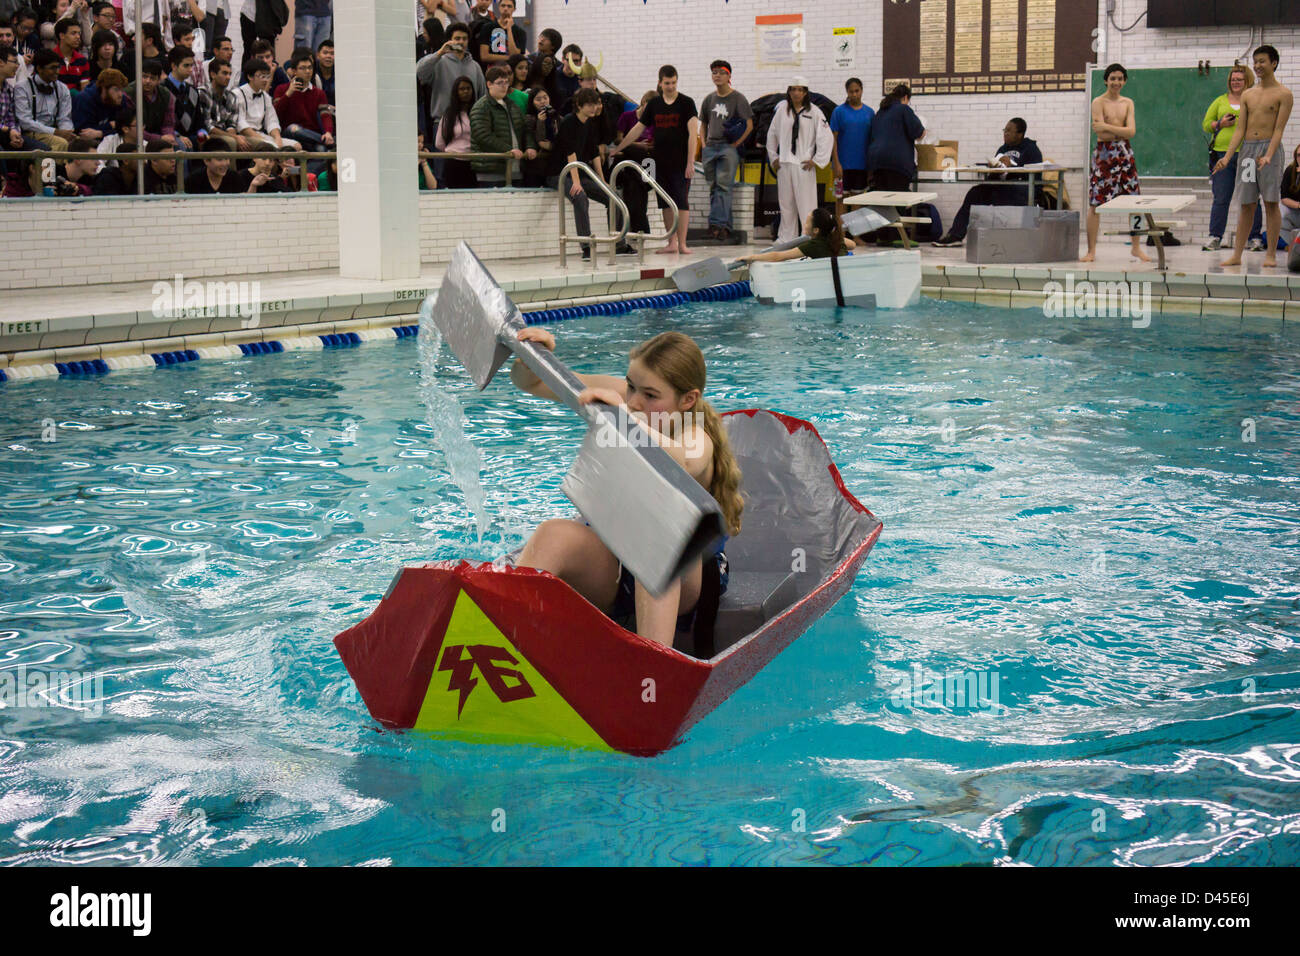 Brooklyn Technical High School's Cardboard Boat Regatta in the